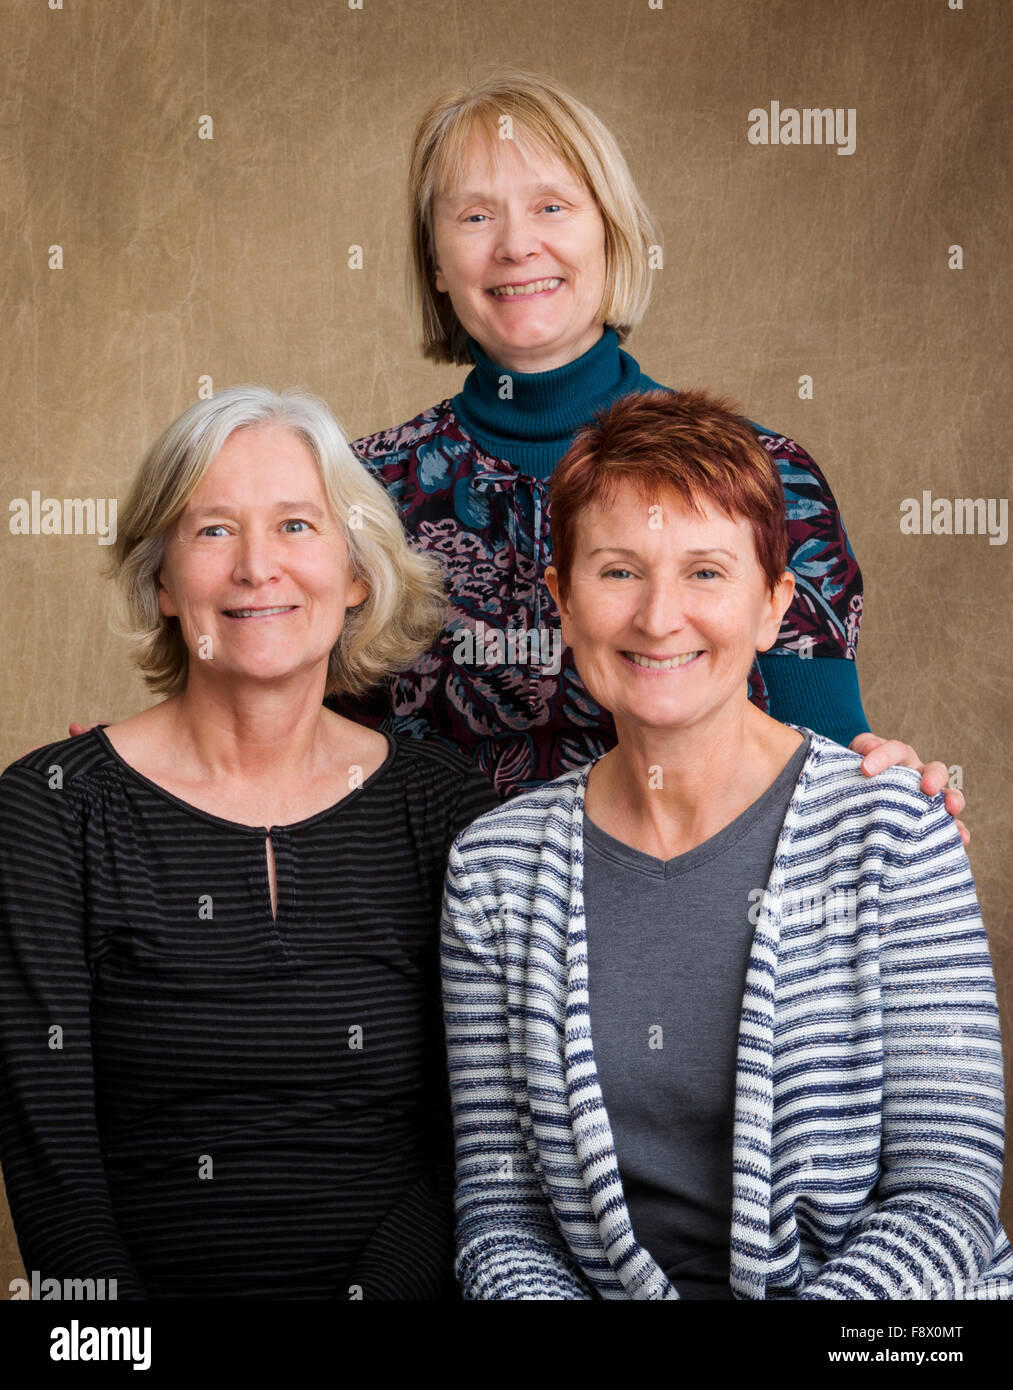 Studio fotografía de tres hermanas mujeres de mediana edad Foto de stock